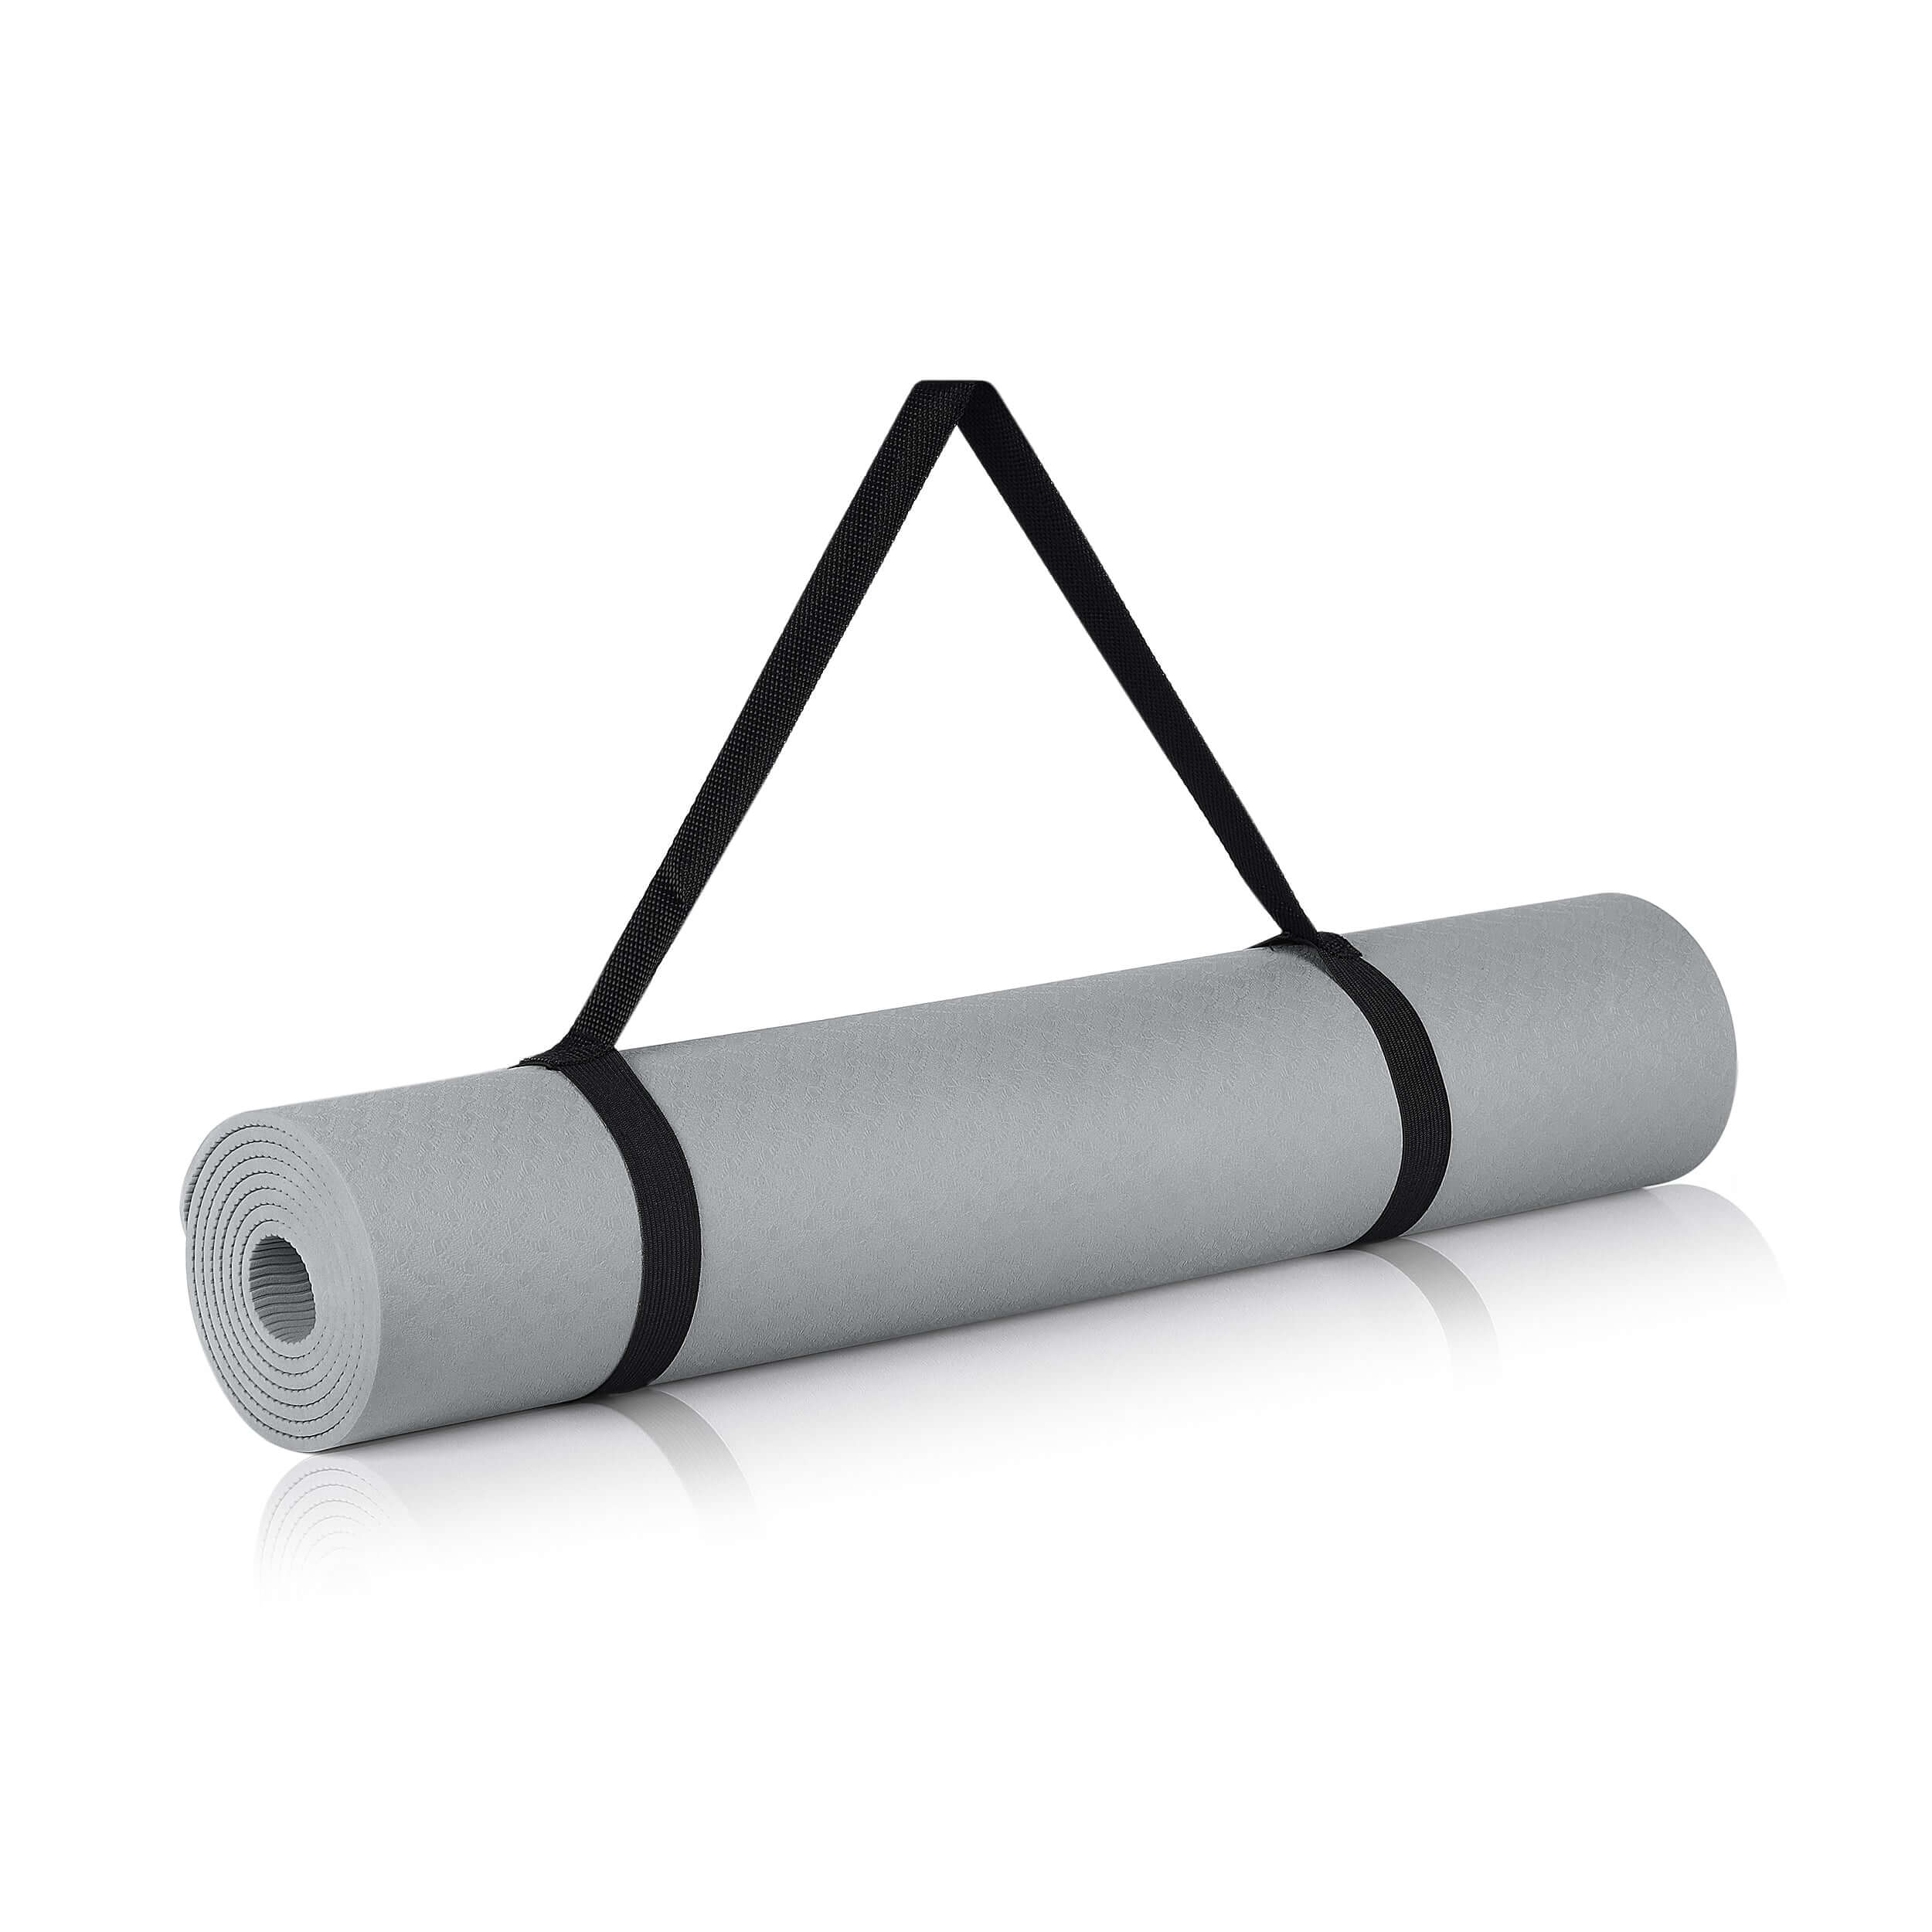 StronGrips Egzersiz Matı, kaydırmaz yüzeyi, 5 mm kalınlığı ve ideal ölçüleriyle tüm yoga, pilates, mobilite ve yer egzersizlerinizde her zaman yanınızda.